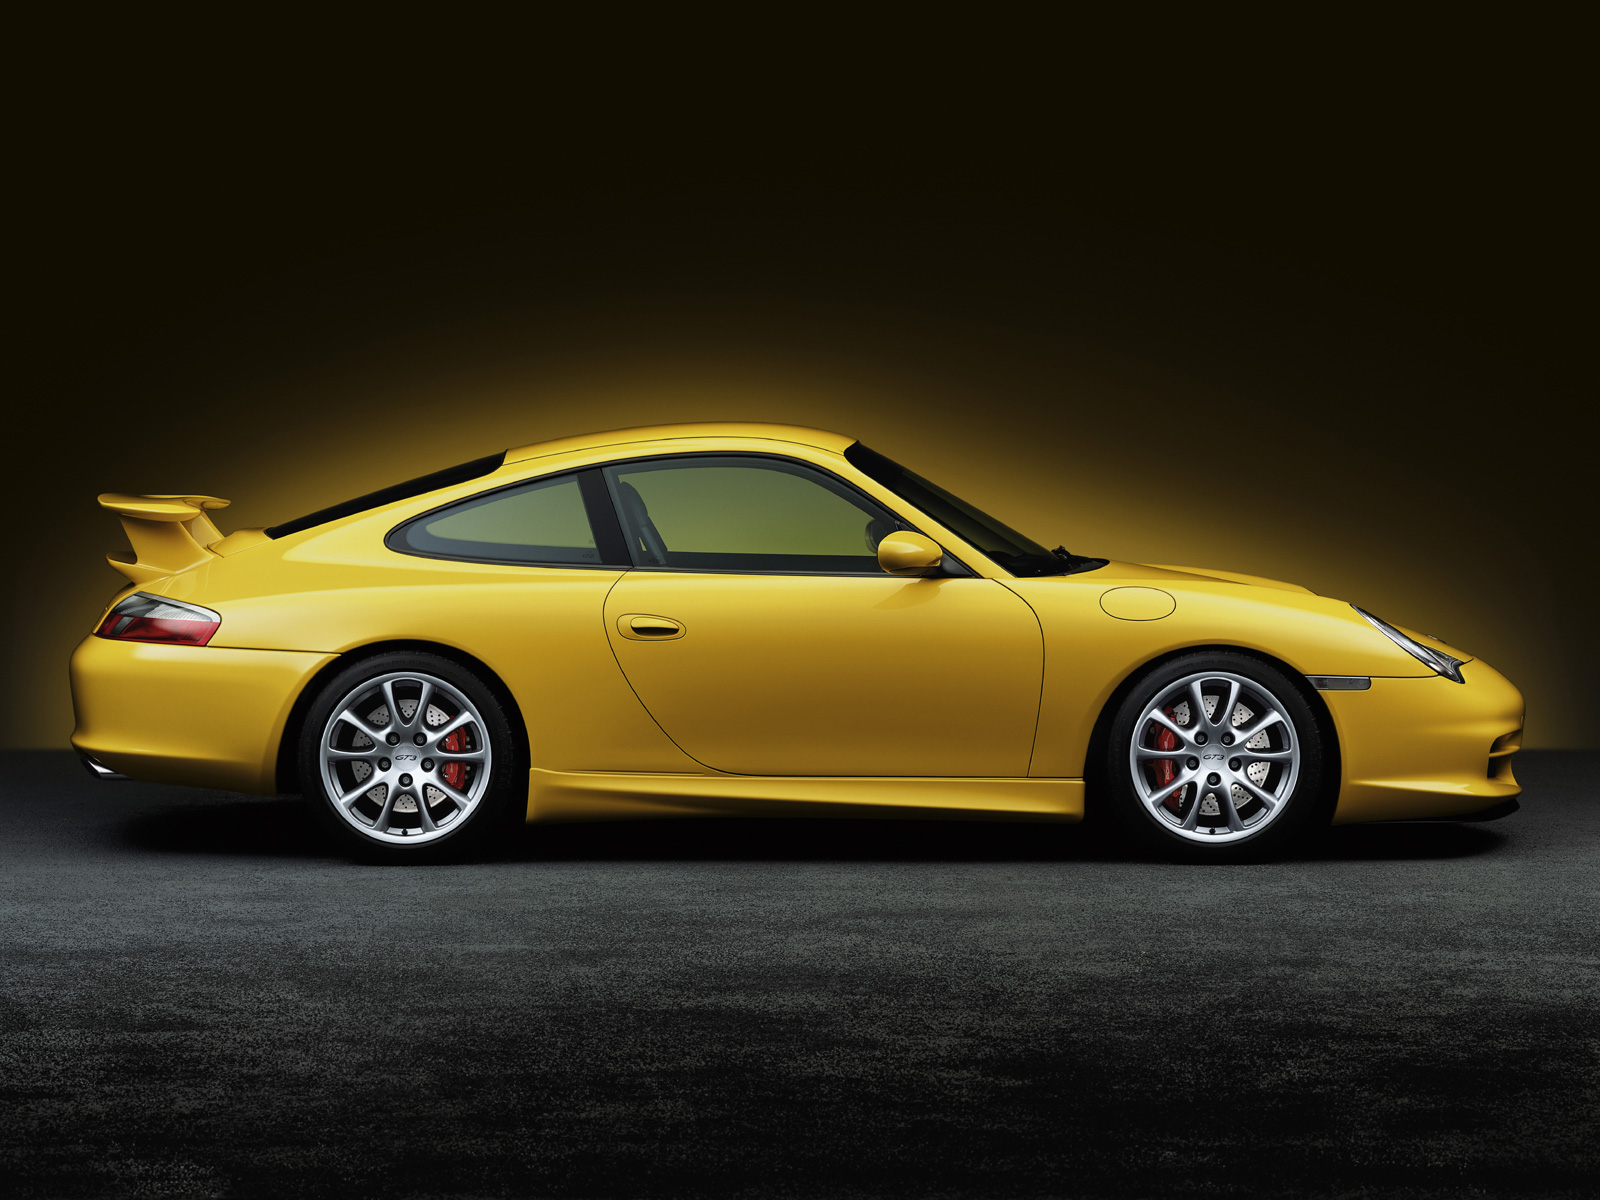 ... , Cars Wallpapers , Porsche , Porsche 996 911 GT3 Cars Wallpapers